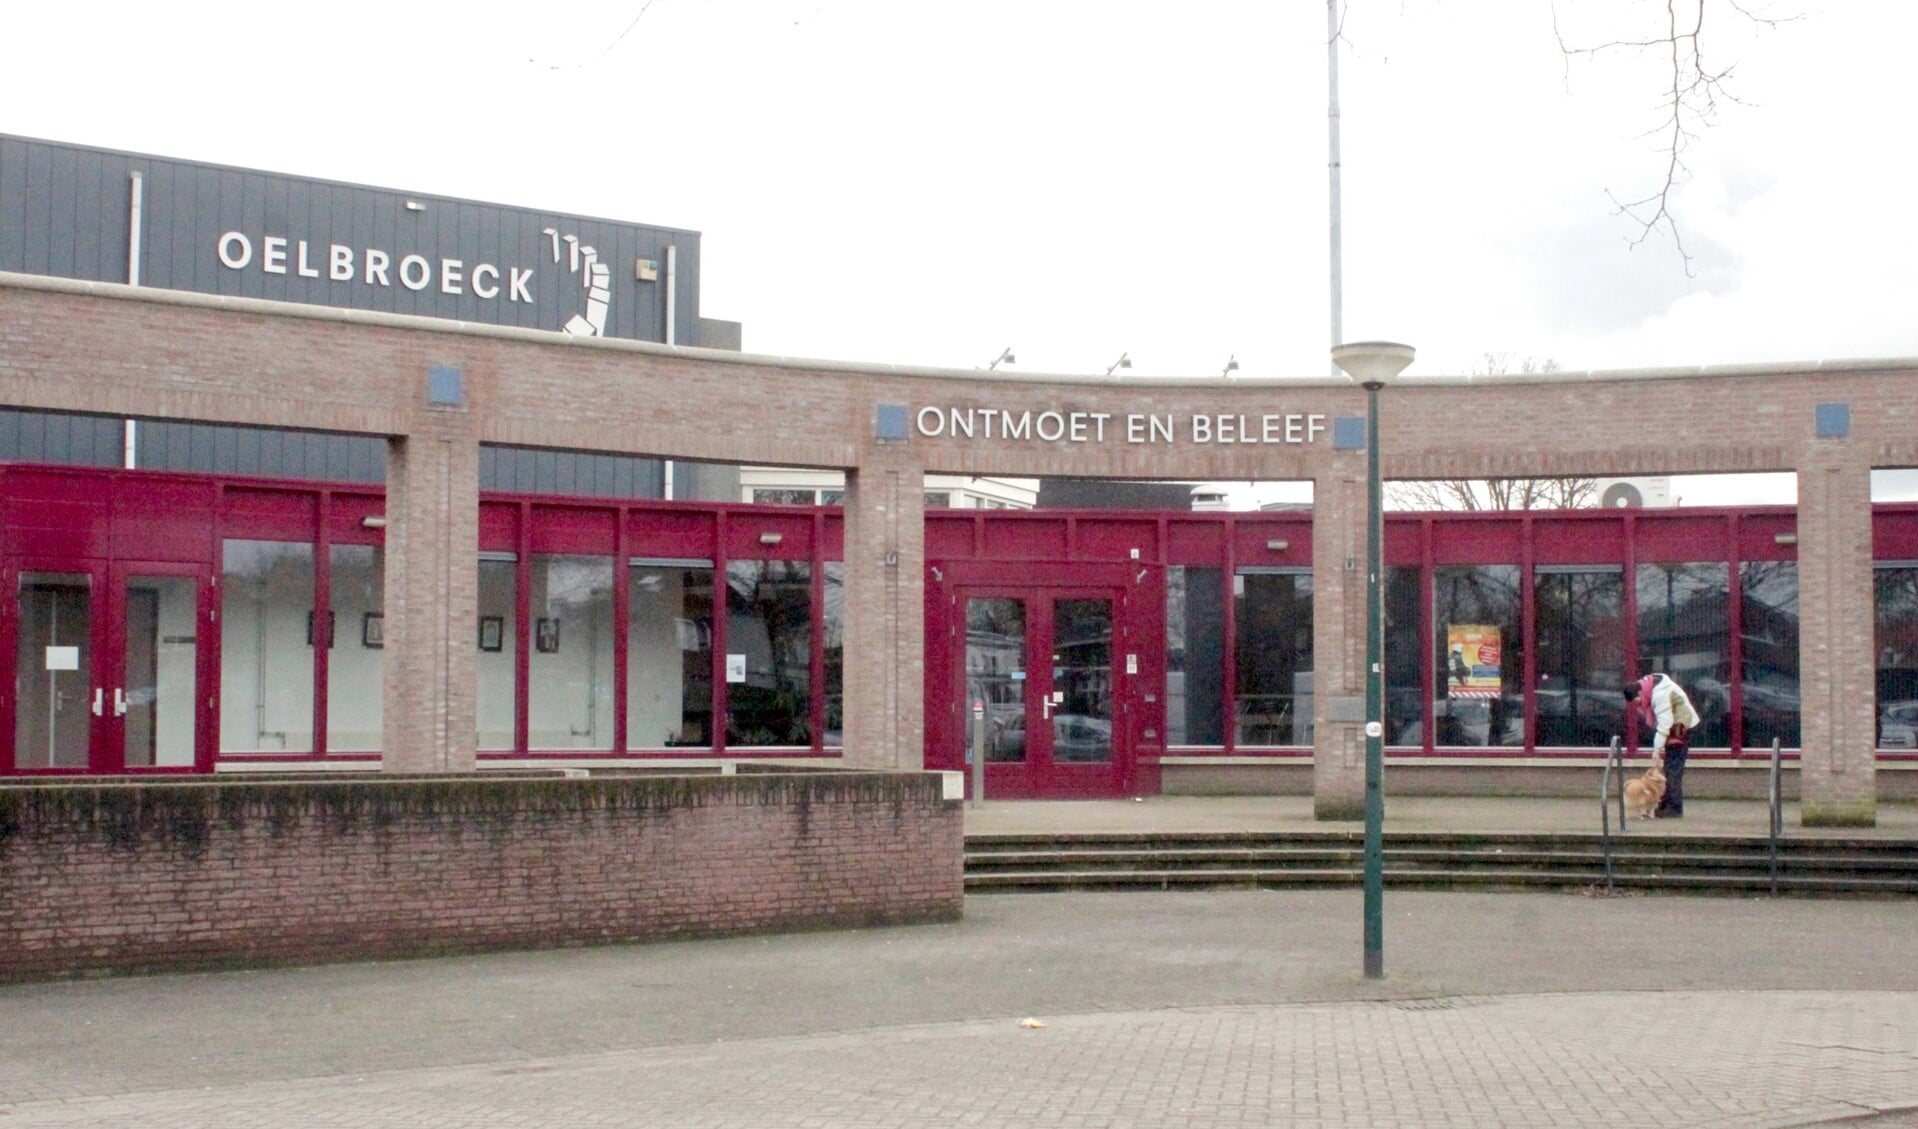 Oelbroeck in Sint Anthonis gaat nog meer nog dan voorheen inhoud geven aan de slogan: Ontmoet en beleef. 